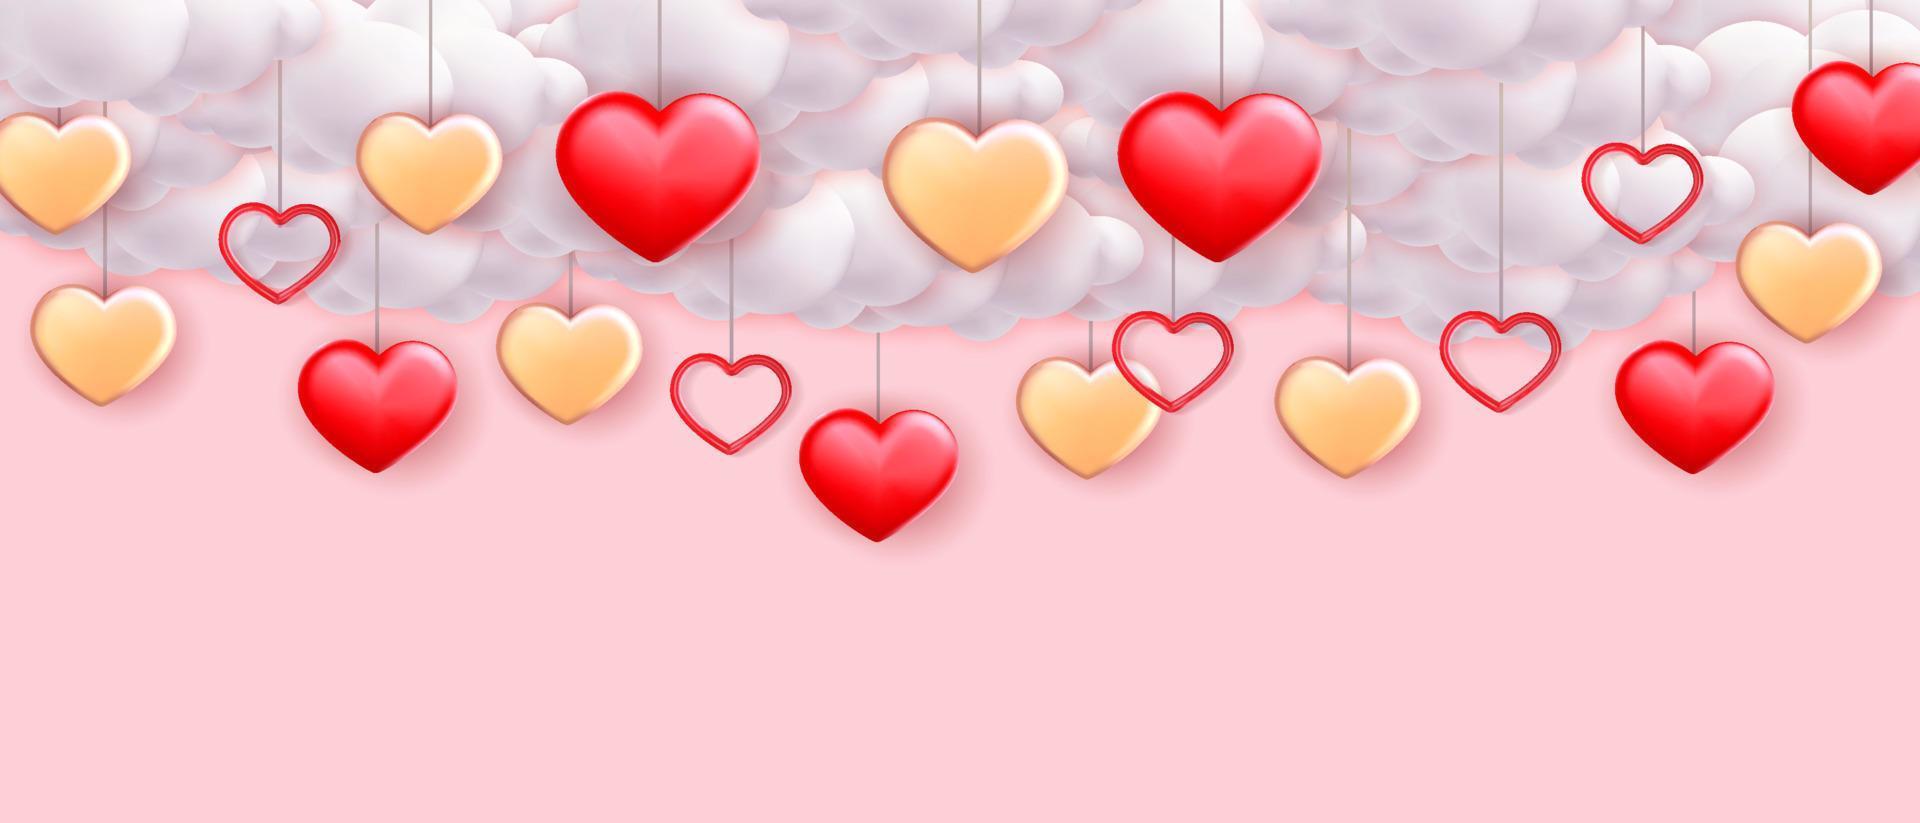 hjärtans dag bakgrund för social media reklam, eller affisch med 3d hjärta former och moln vektor